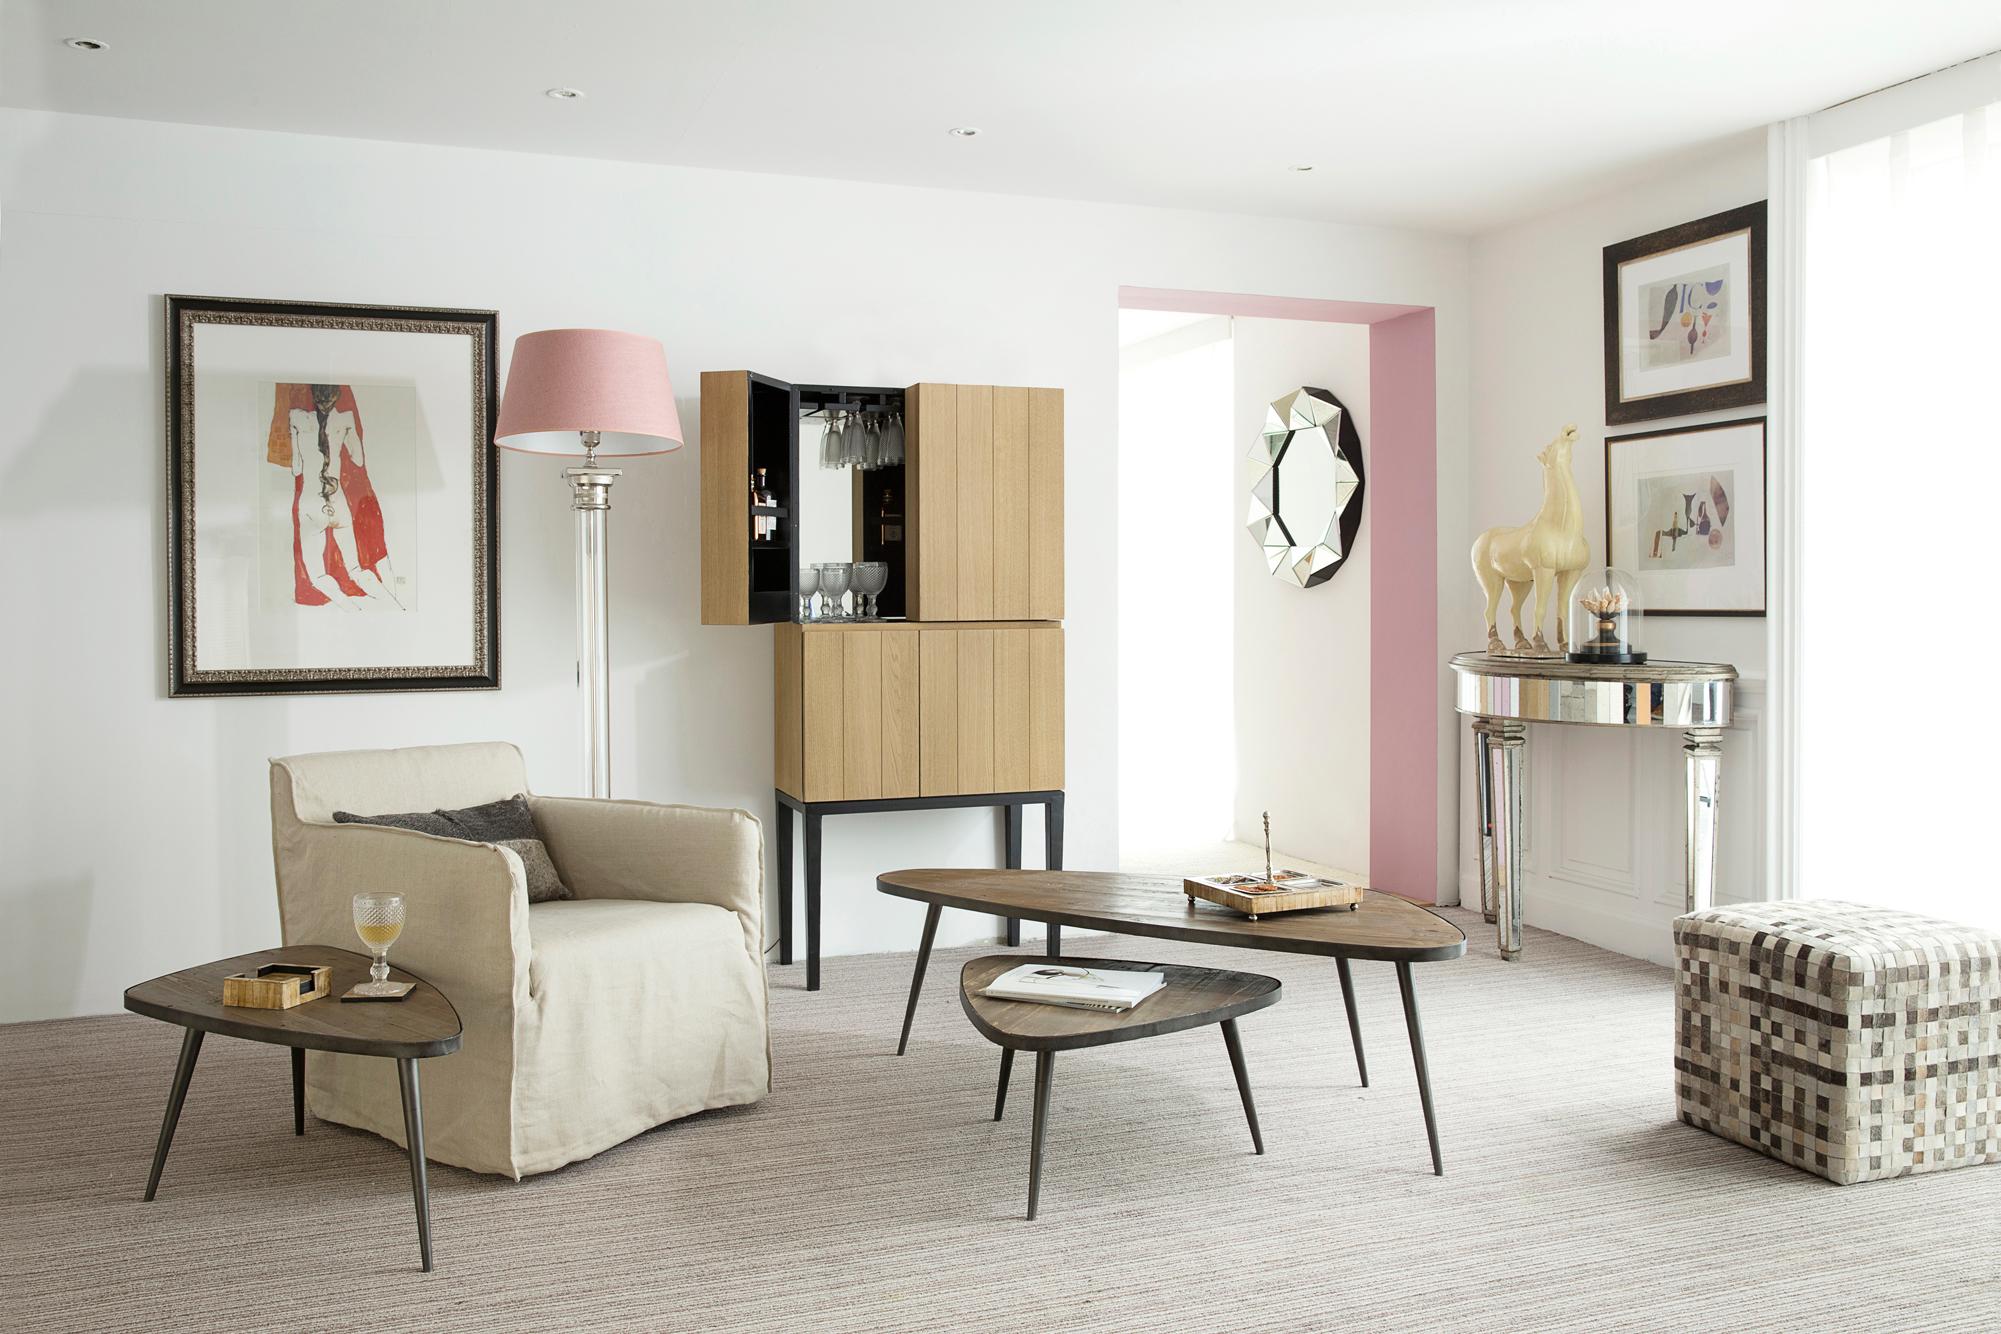 Pinkfarbene Akzente im Wohnzimmer #couchtisch #wohnzimmer #nierentisch #zimmergestaltung ©Flamant